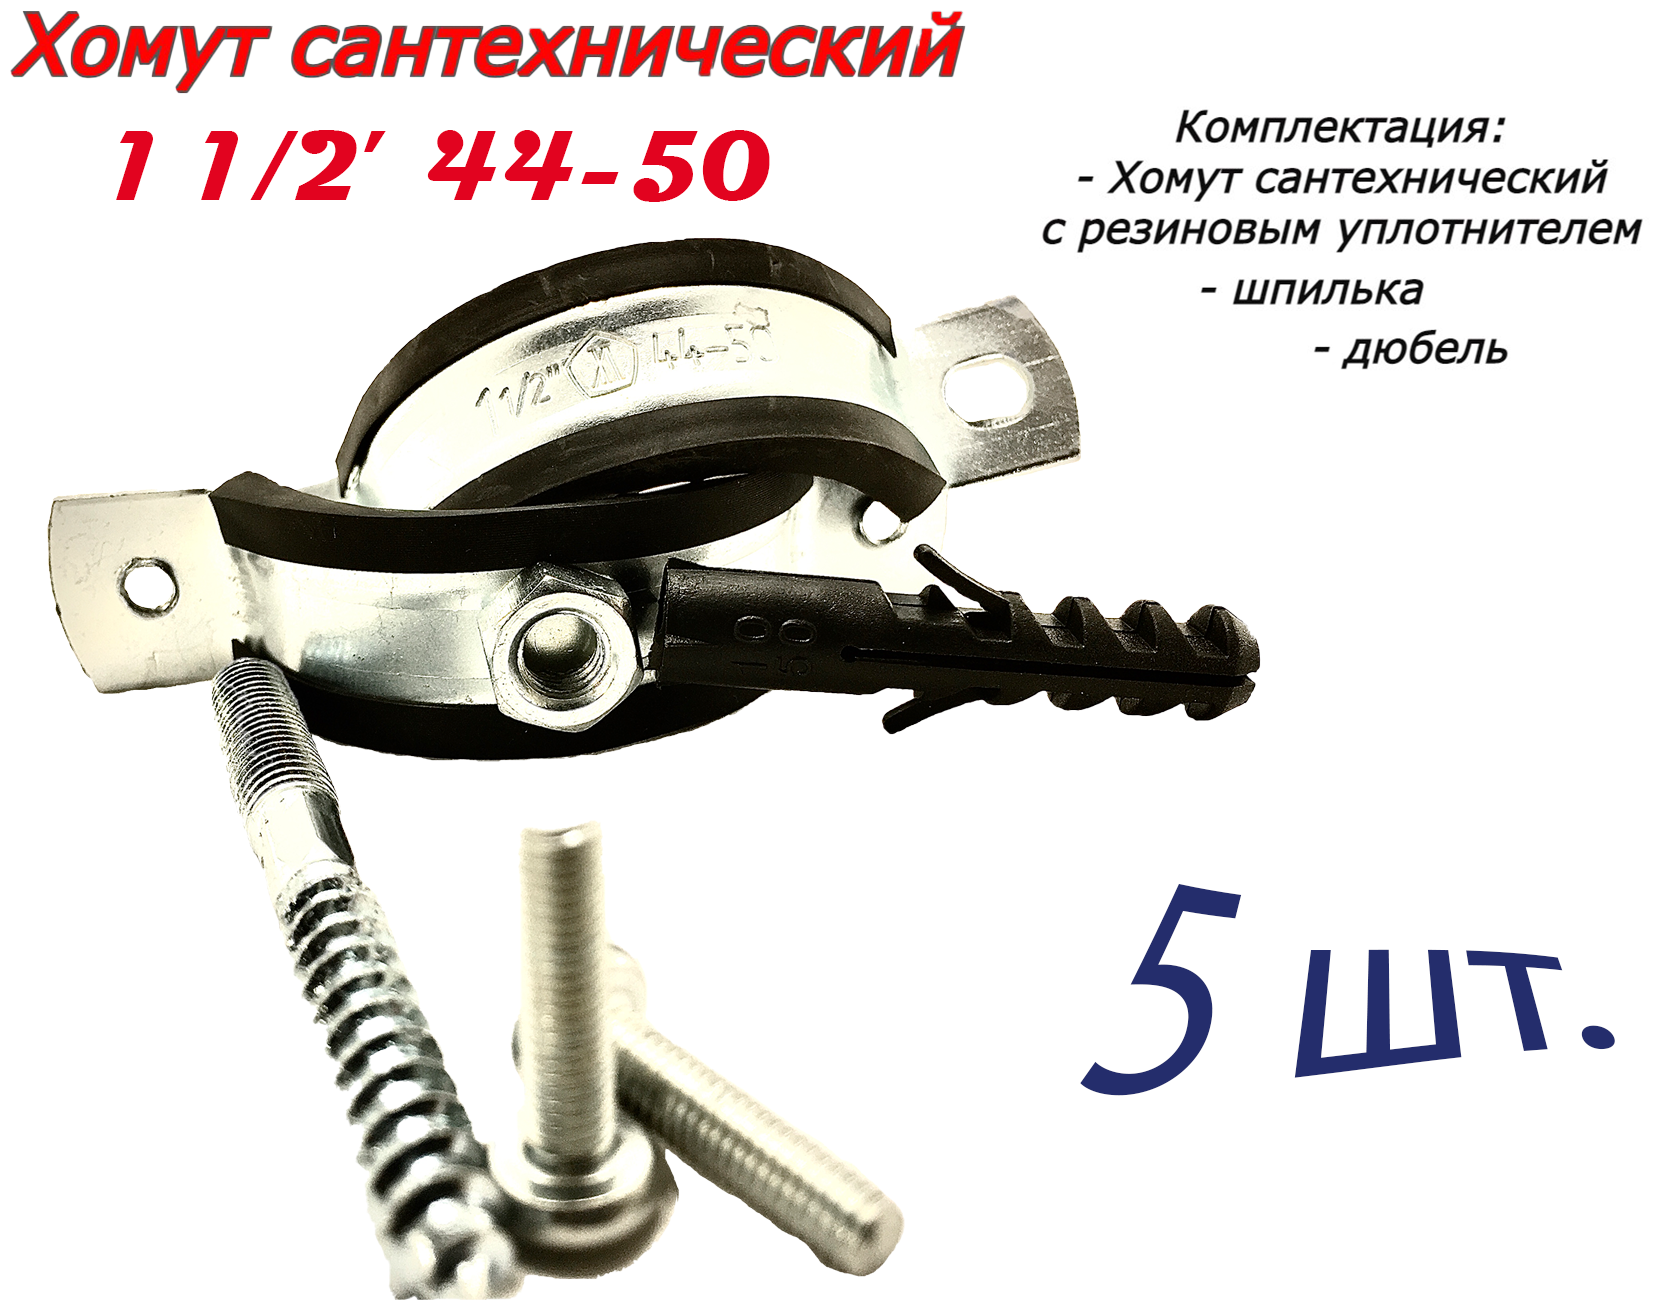 Хомут сантехнический D1" 1/2 44-50 (5 шт) для труб с резиновым уплотнением шпилькой и дюбелем